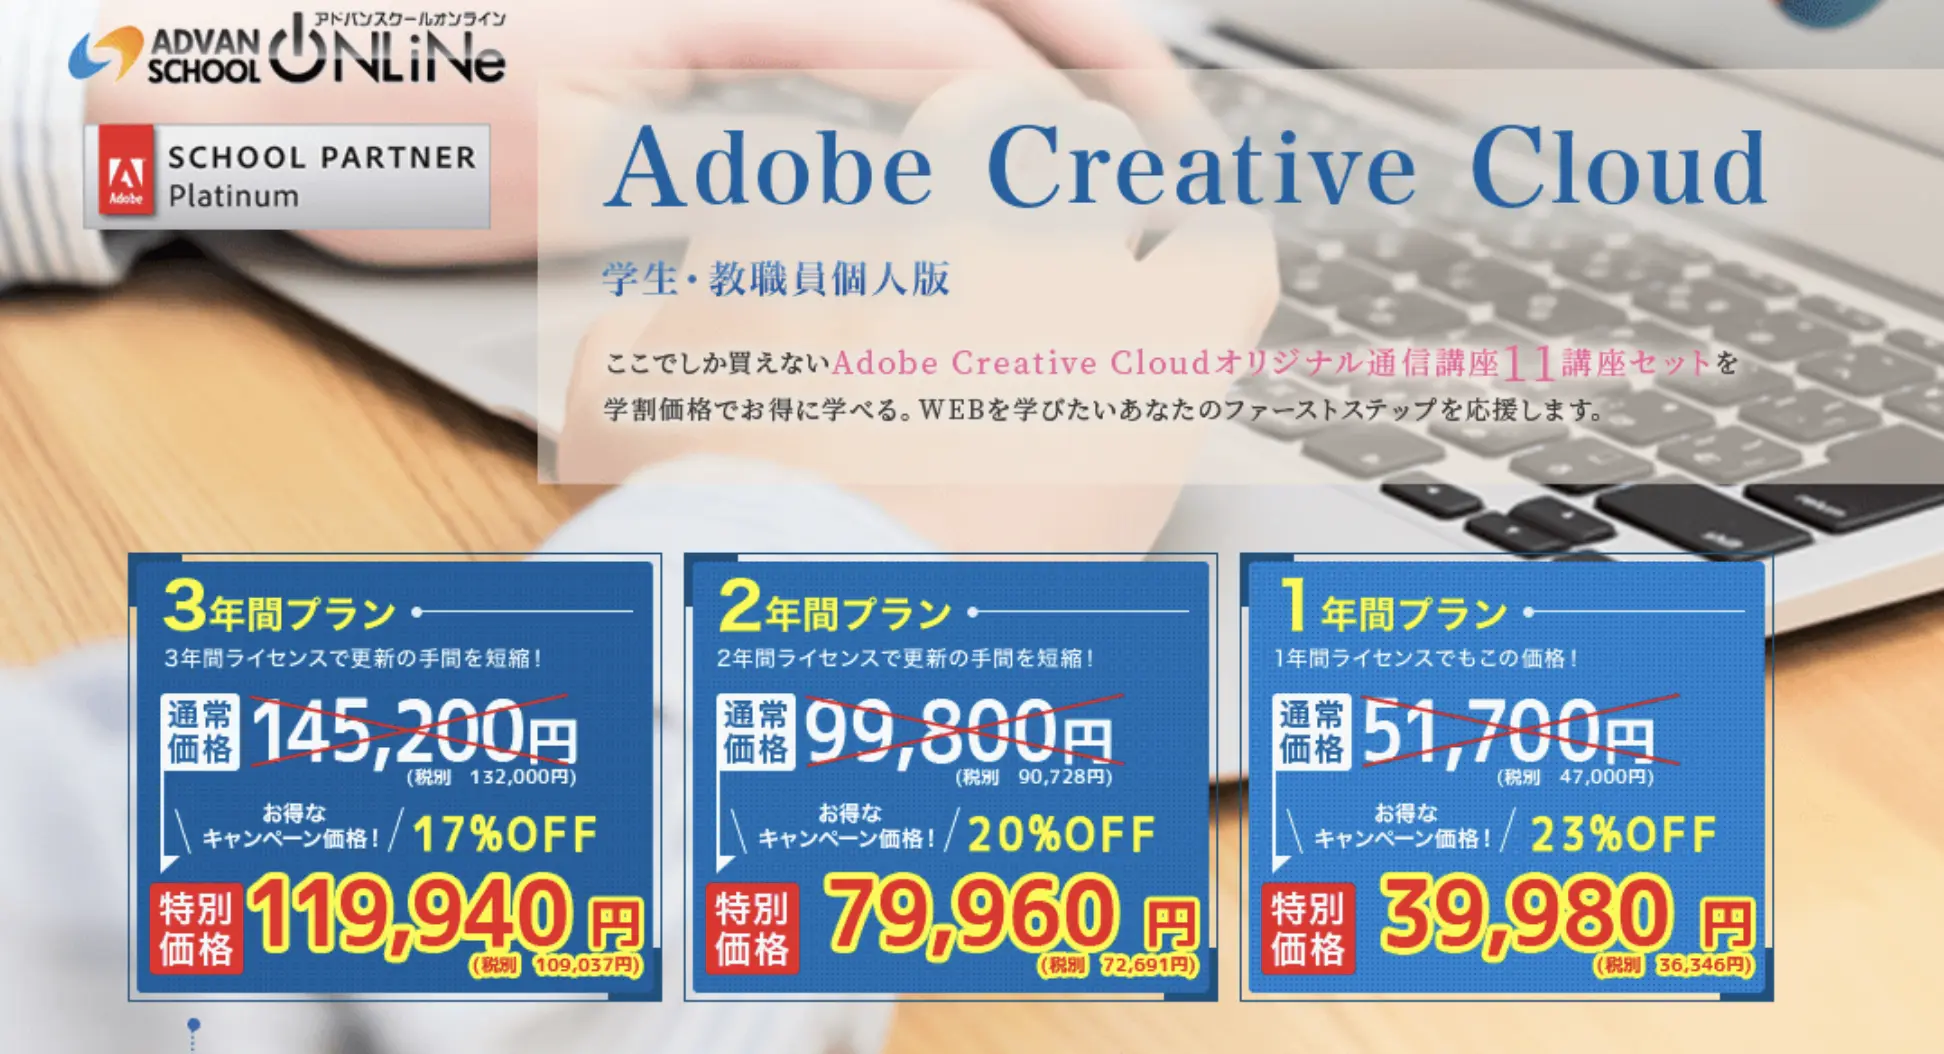 Adobeを一番安く買うにはたのまなやデジハリよりアドバンスクールがおすすめです。